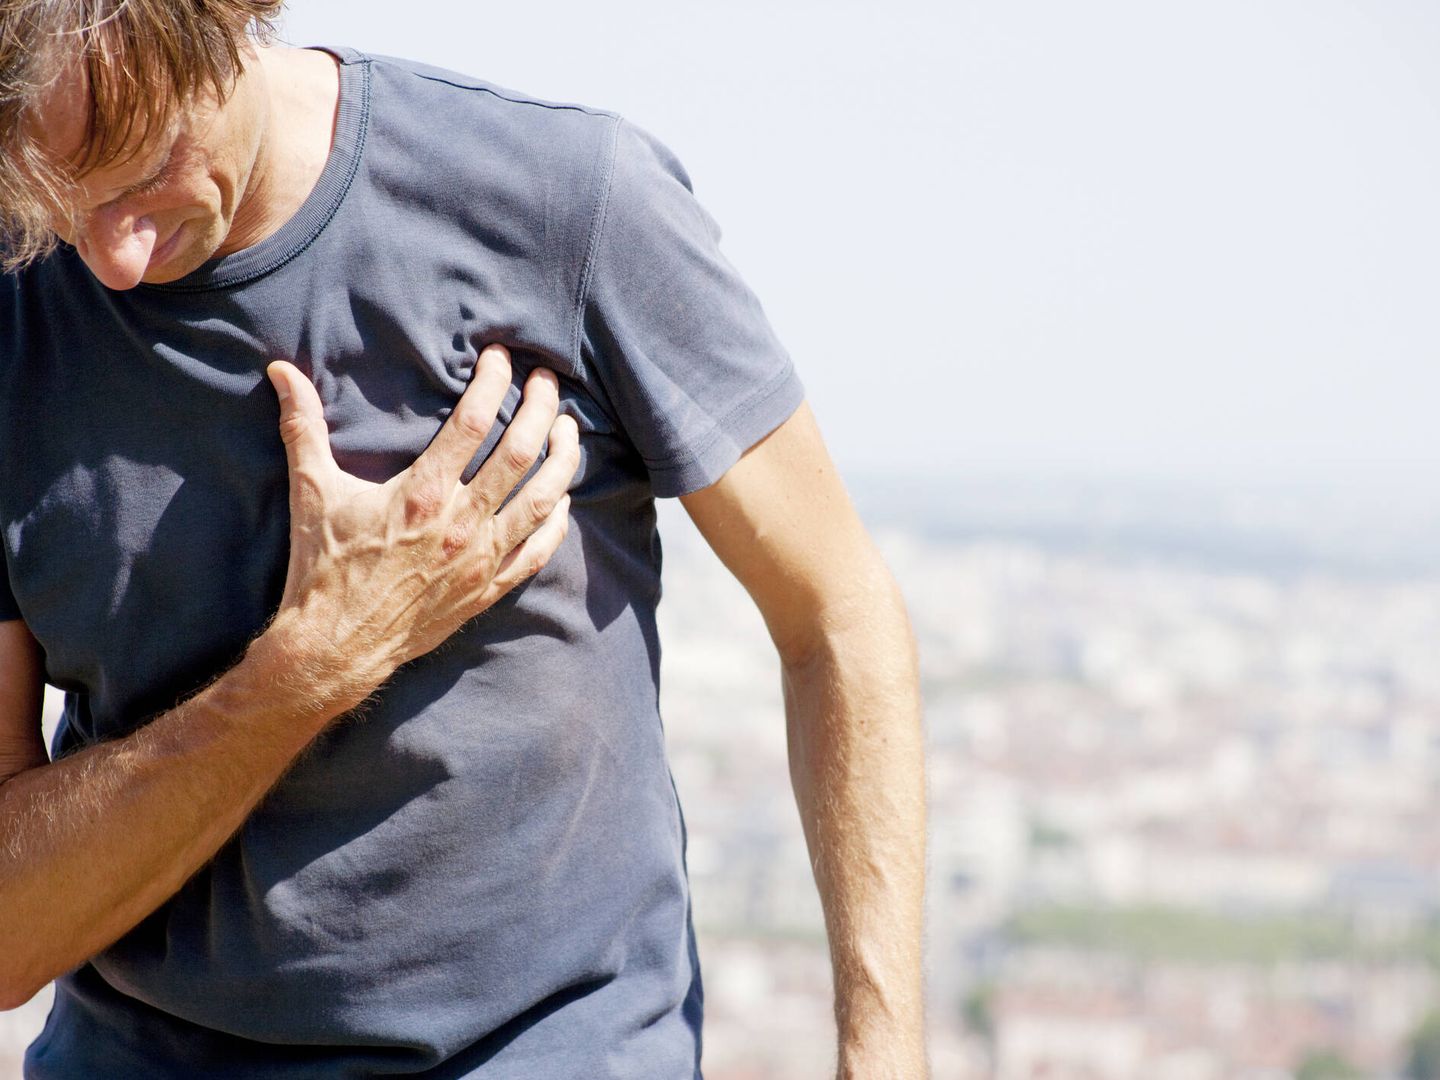 La aterosclerosis puede propiciar accidentes cardíacos como un infarto de miocardio. (iStock)